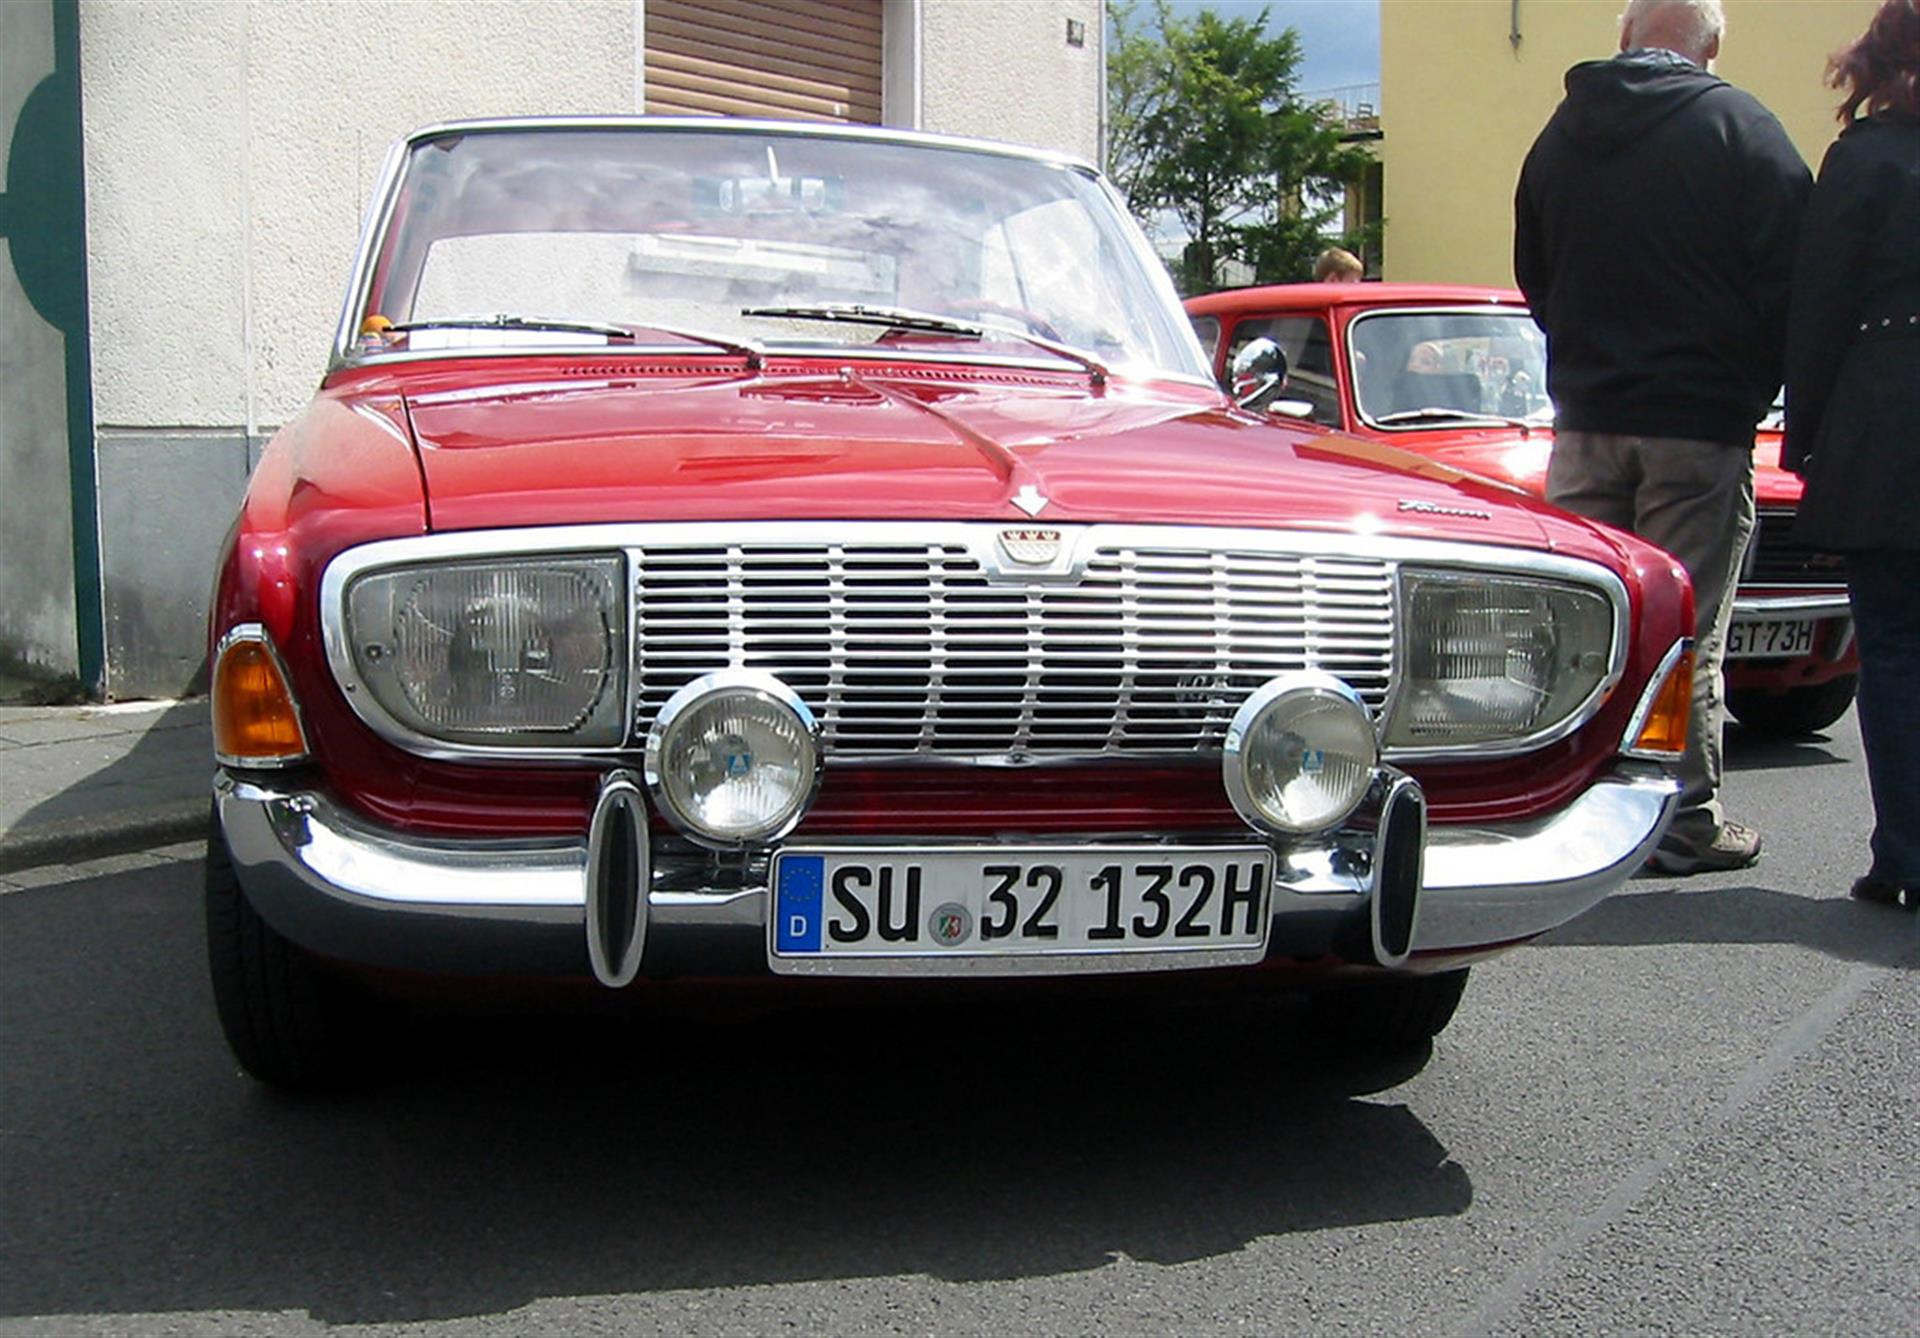 Ford-Personenkraftwagen des 1964-1967 in den Kölner Ford-Werken hergestellten Typs "Taunus P5" (Verkaufsbezeichnungen "17M" und "20M") bei einer Oldtimer-Veranstaltung in Niederkassel (2011). &copy; Knöchel, Franz-Josef